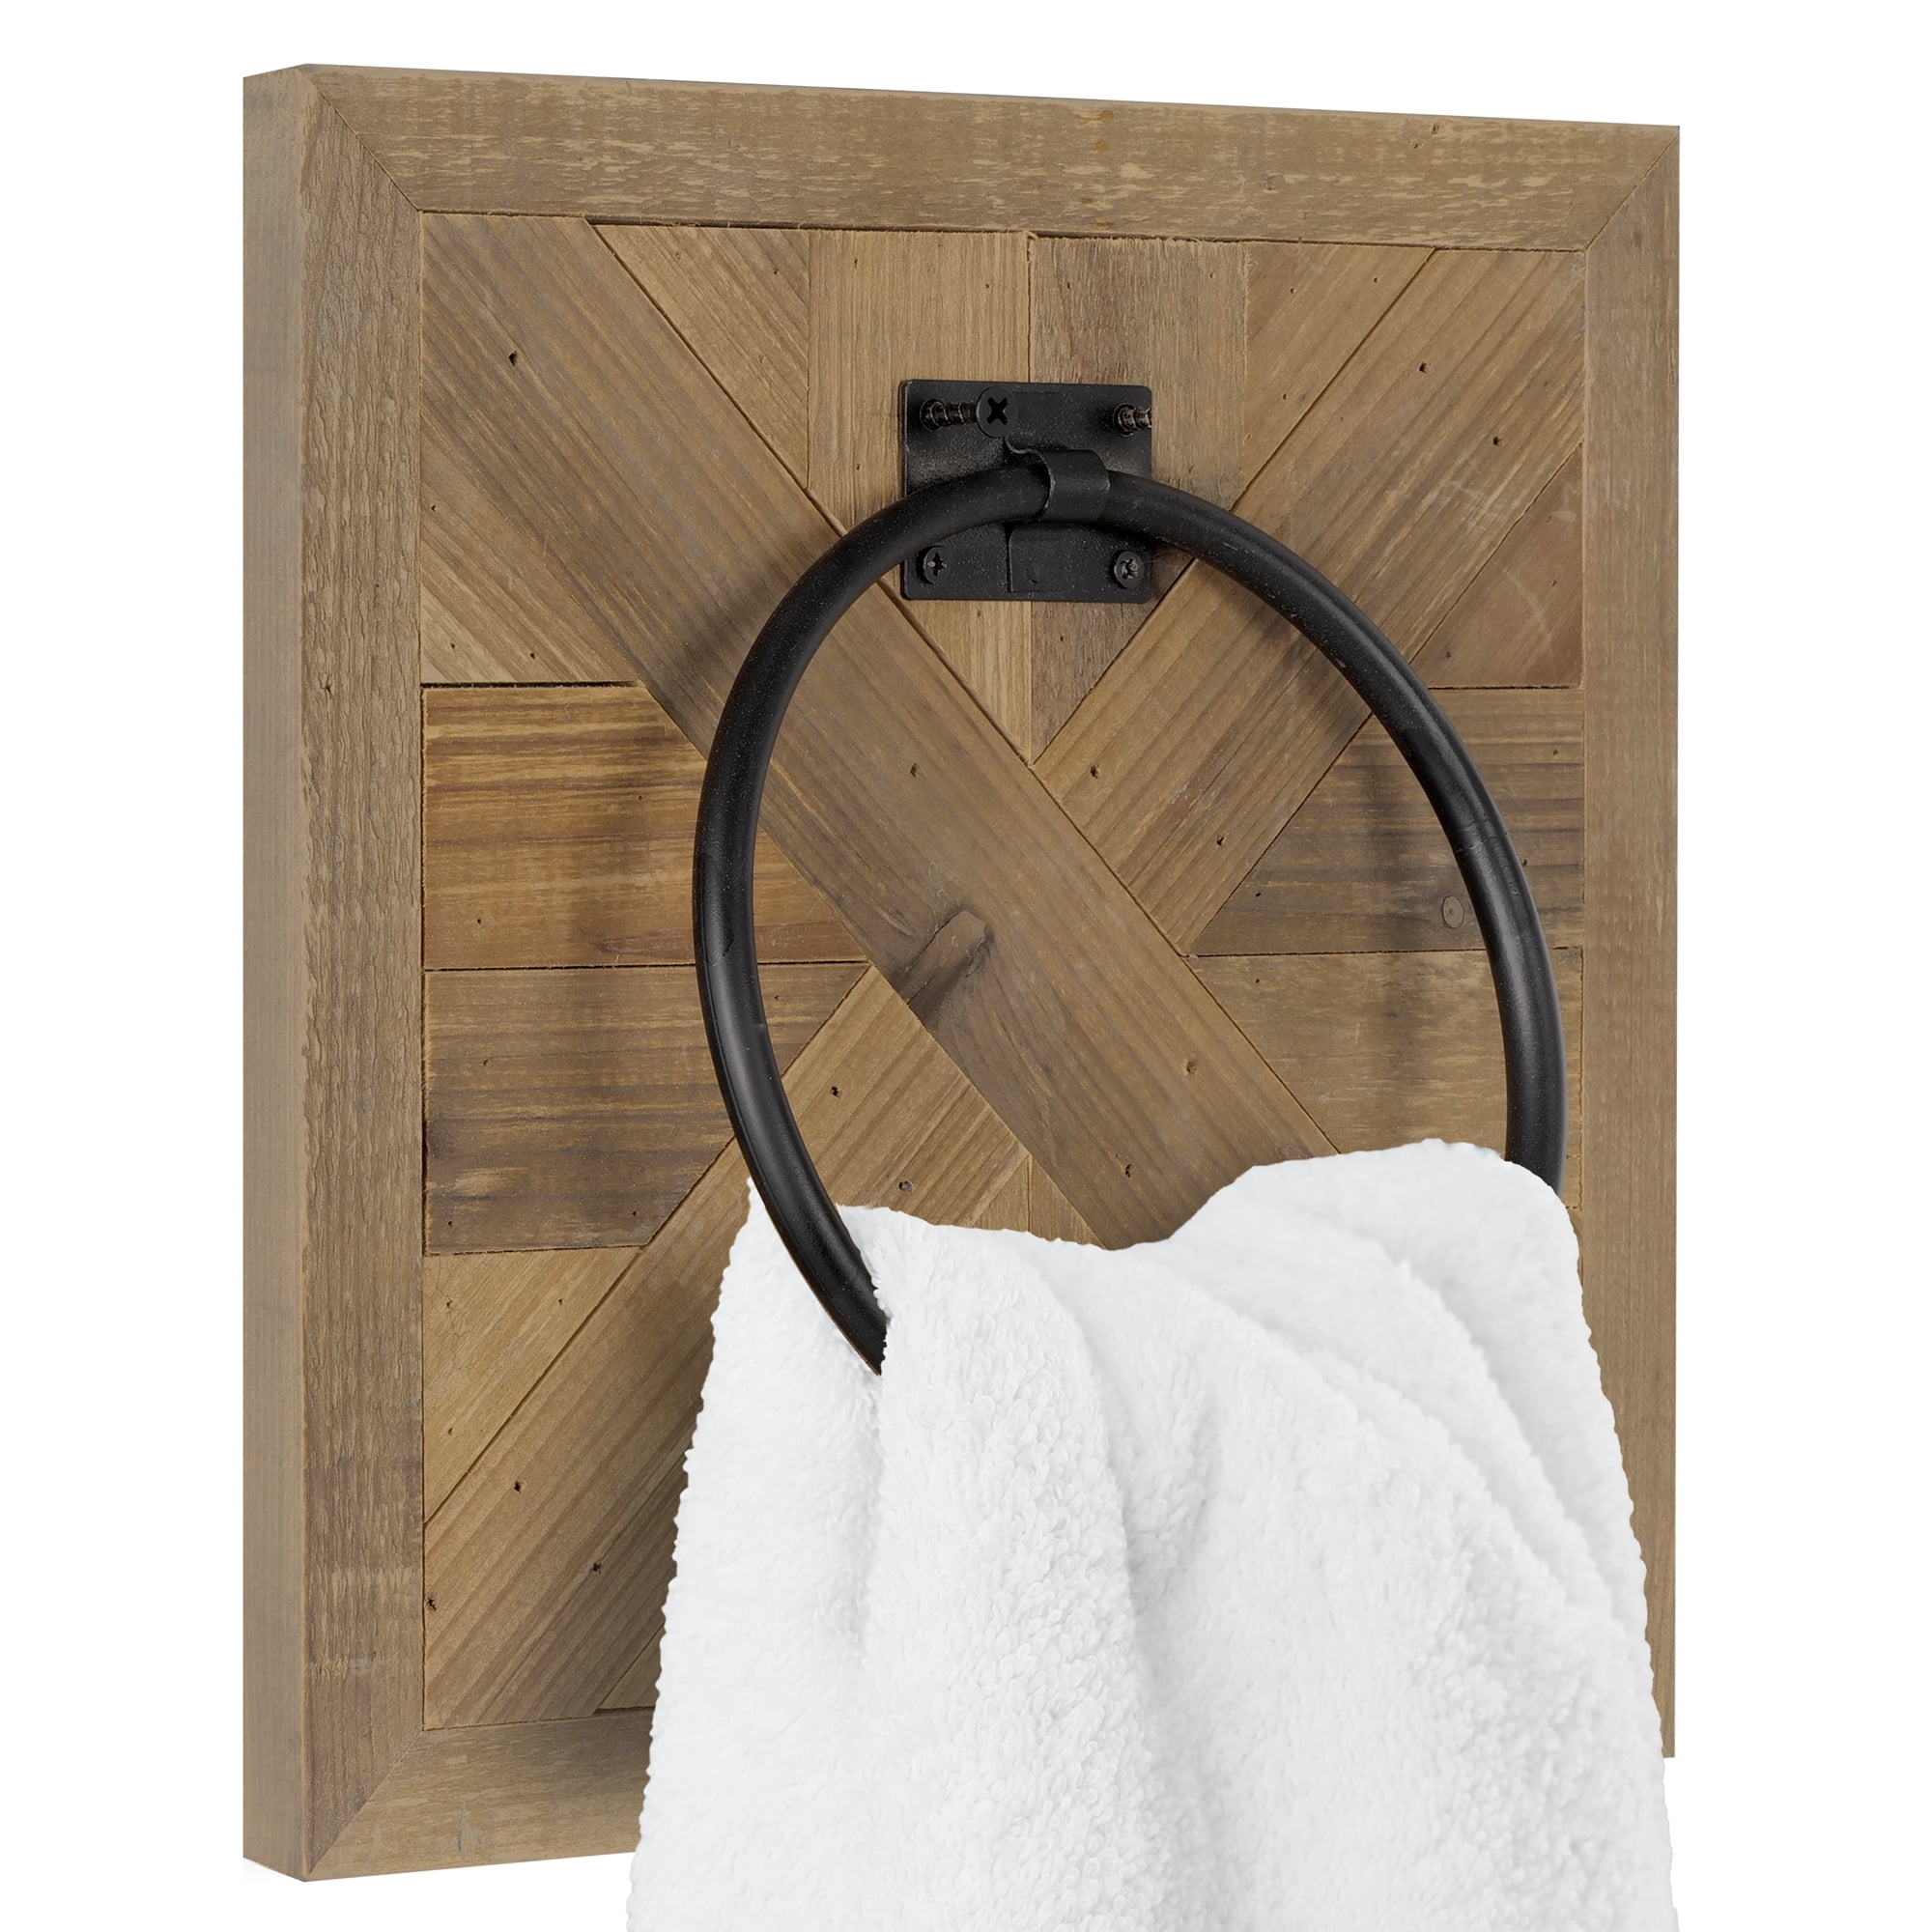 Autumn Alley Barn Door Rustic Bathroom Towel Rack | Warm Brown Wood and